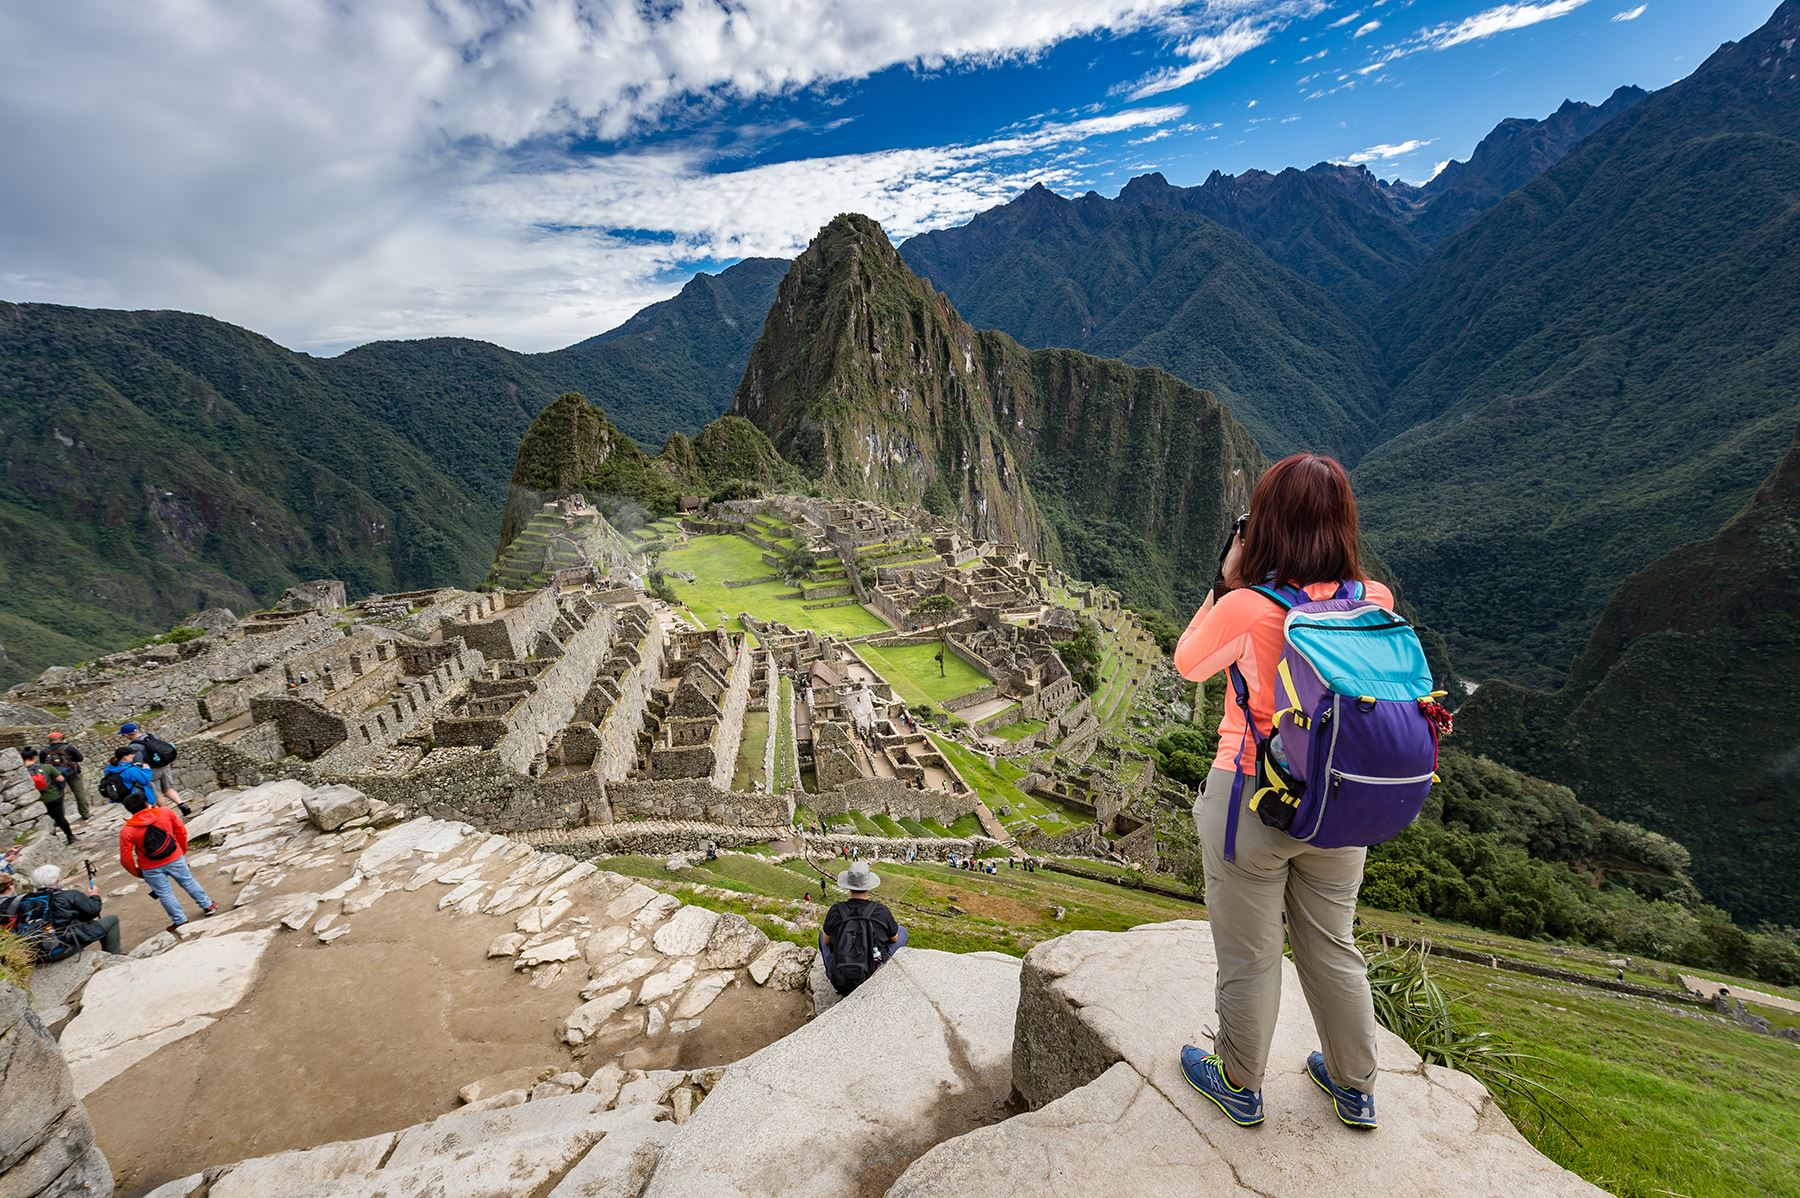 Turista en la ciudadela inca de Machu Picchu, principal destino turístico del Perú, país miembro de la Alianza del Pacífico. ANDINA/archivo